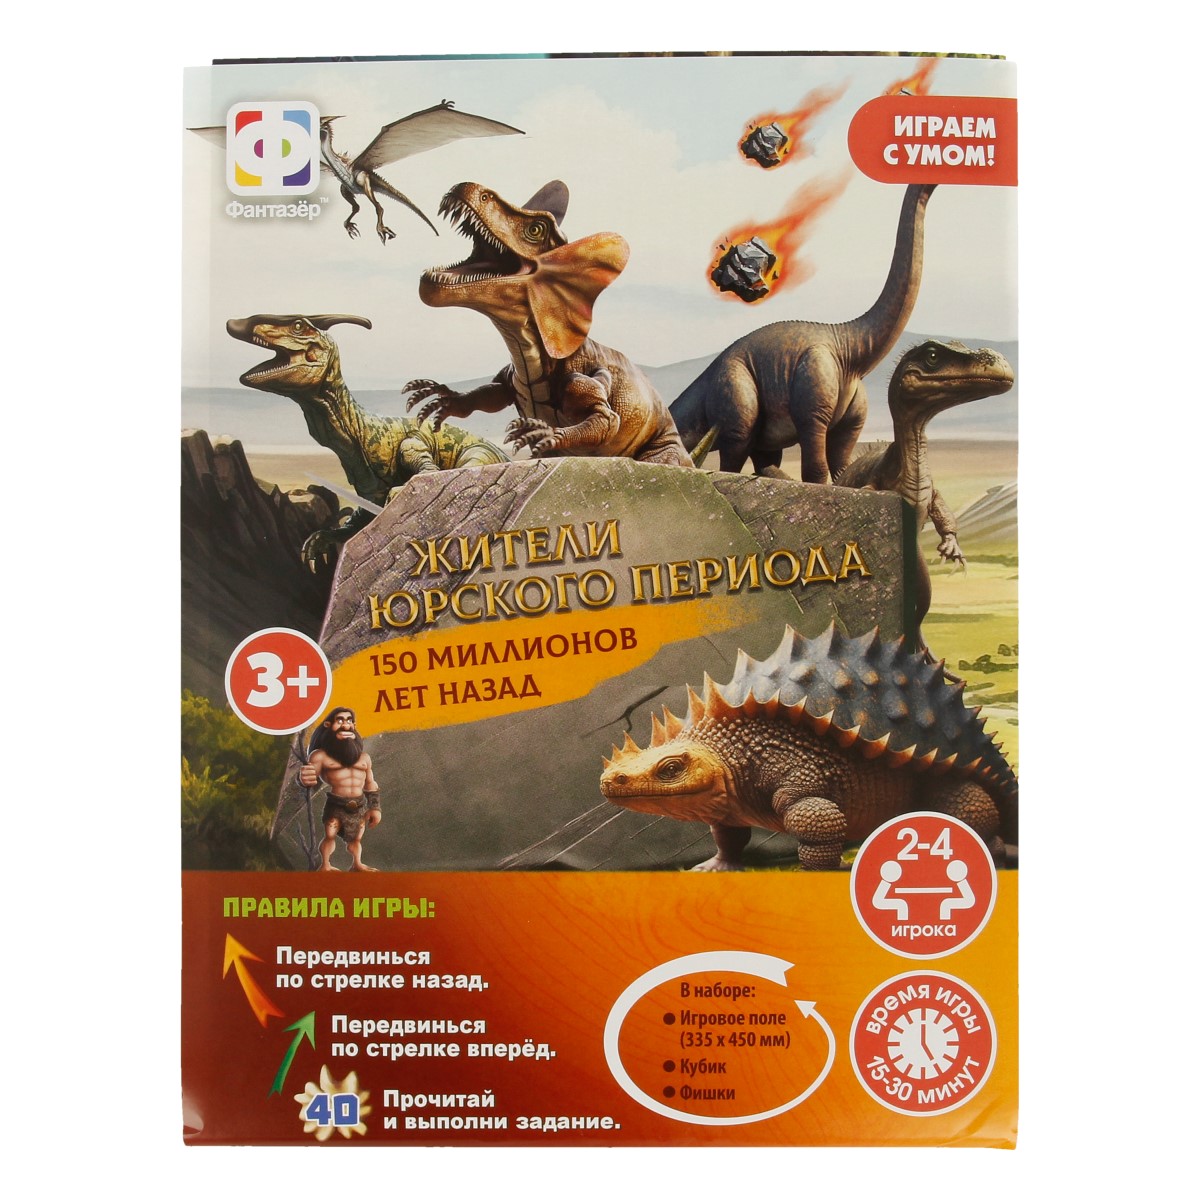 Игра с фишками 450*340 мм "Динозавры" в пакете 5+